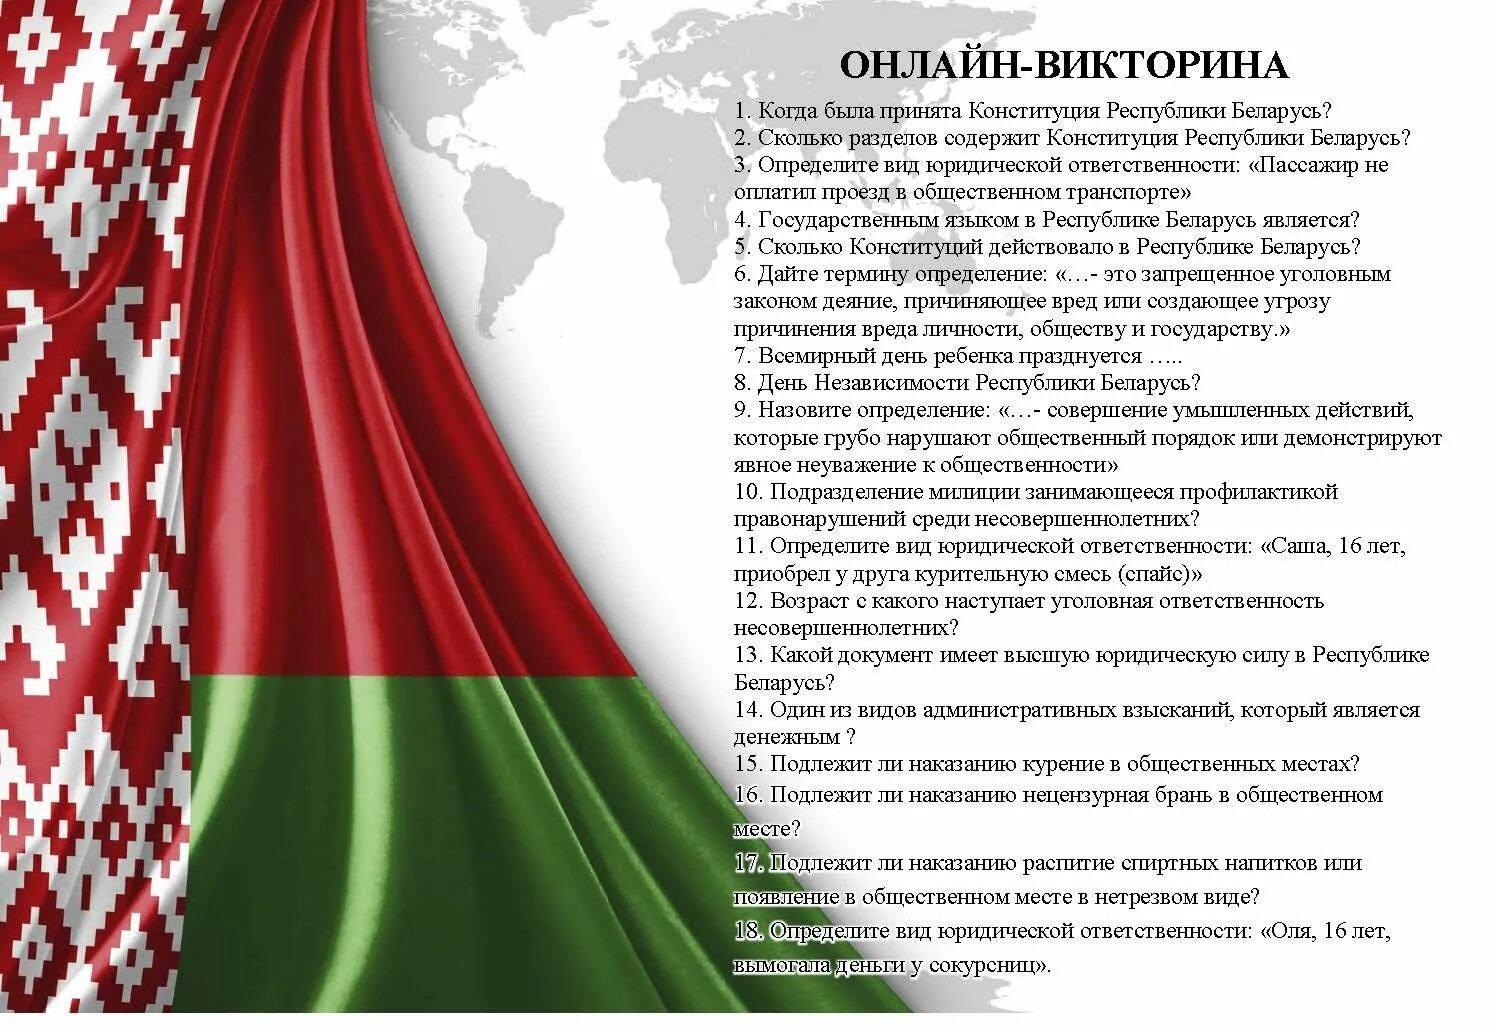 Белорусский флаг независимости. Национальные символы Беларуси. День Конституции Республики Беларусь.